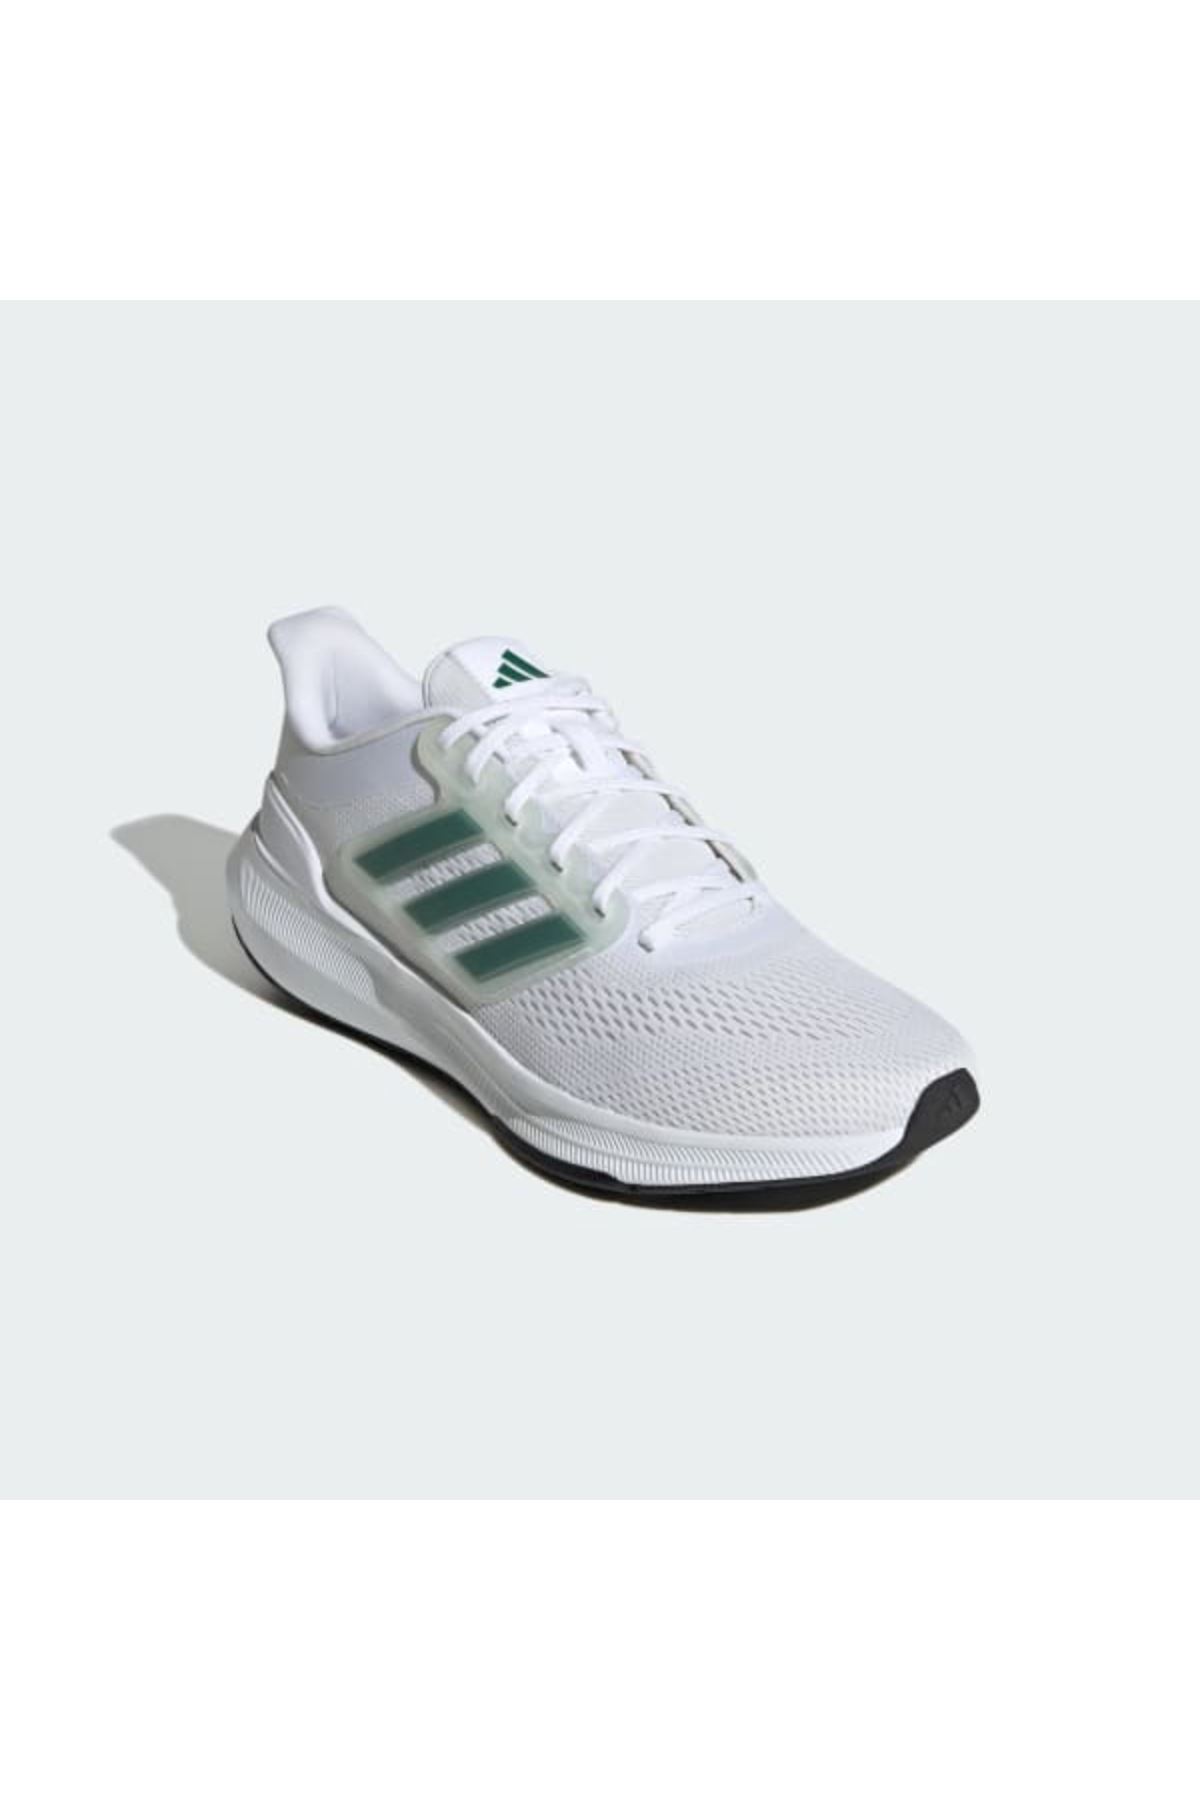 Adidas Ultrabounce Erkek Beyaz Spor Ayakkabı - ID2251